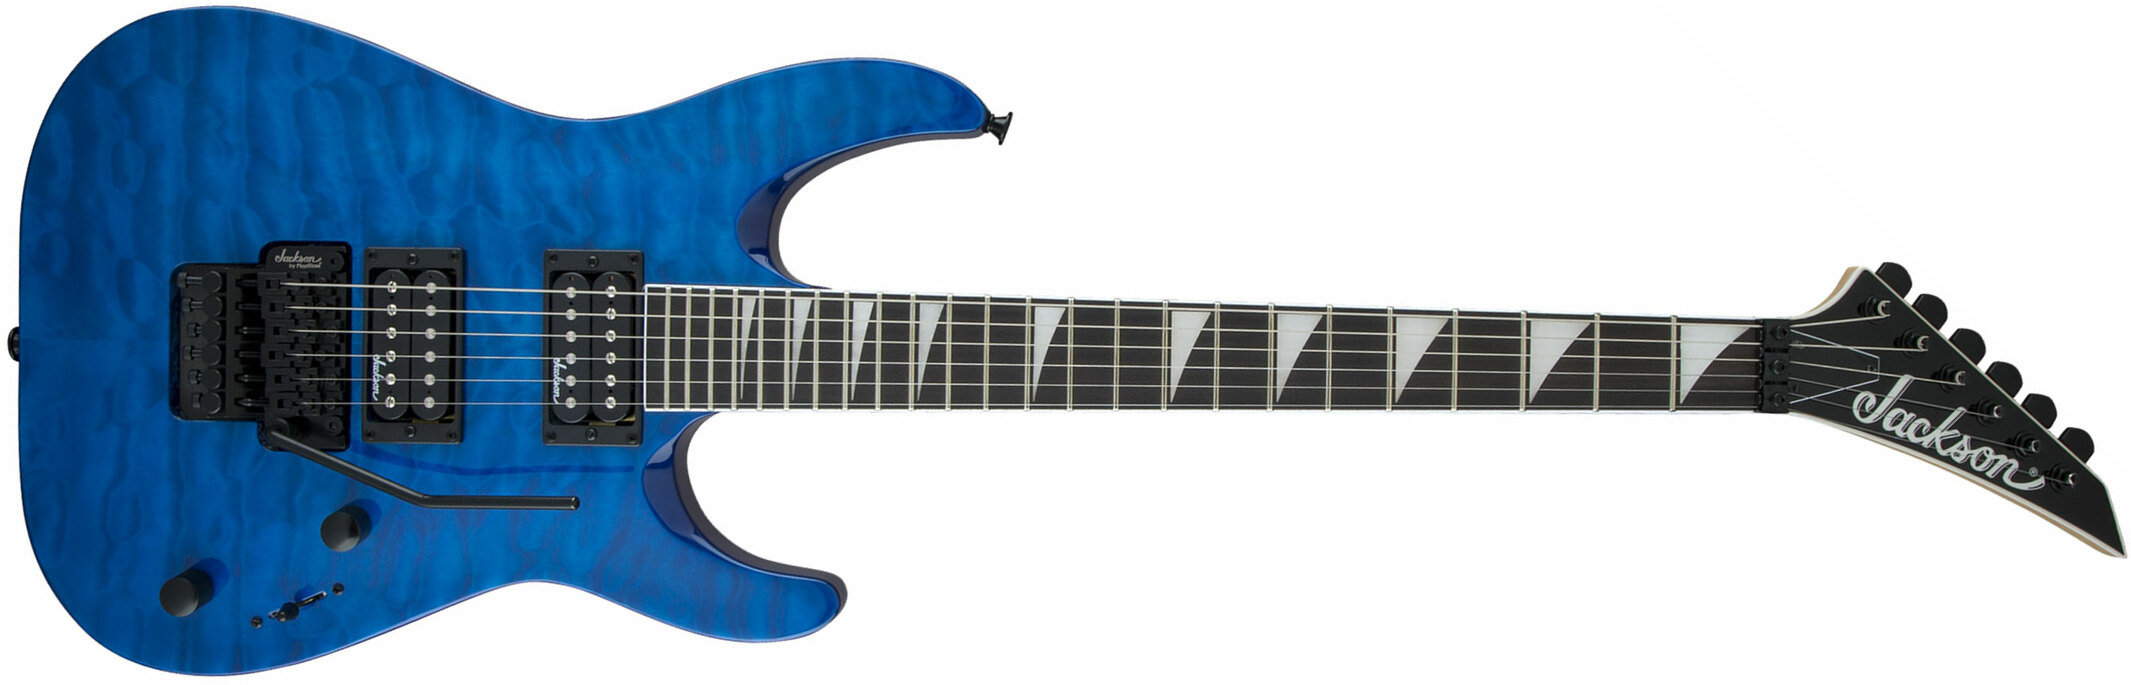 Jackson Dinky Archtop Js32q Dka 2h Fr Ama - Trans Blue - Guitarra eléctrica de doble corte. - Main picture